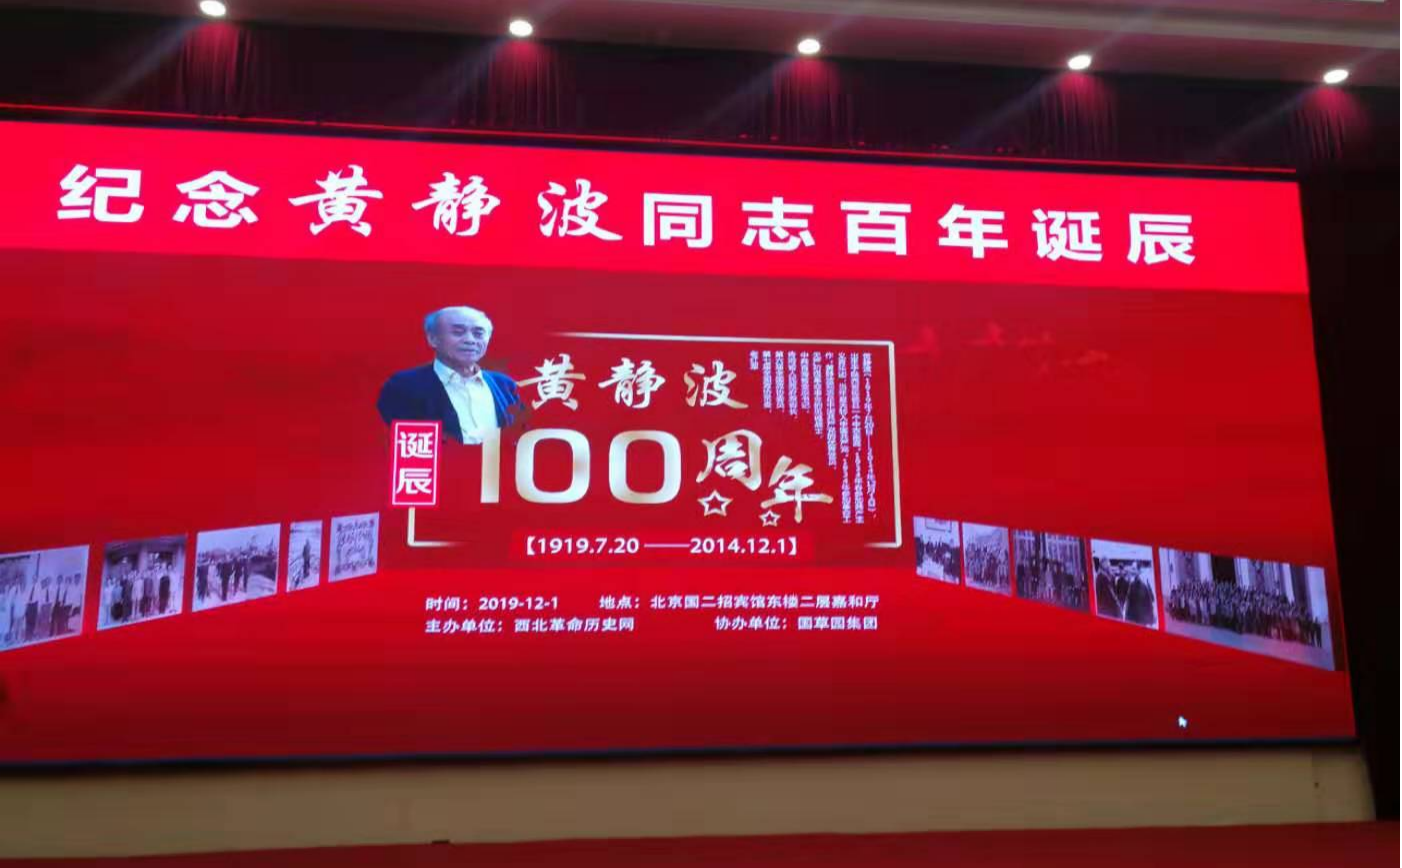 公仆本色  永远闪烁——纪念黄静波同志百年诞辰在北京国务院二招举行